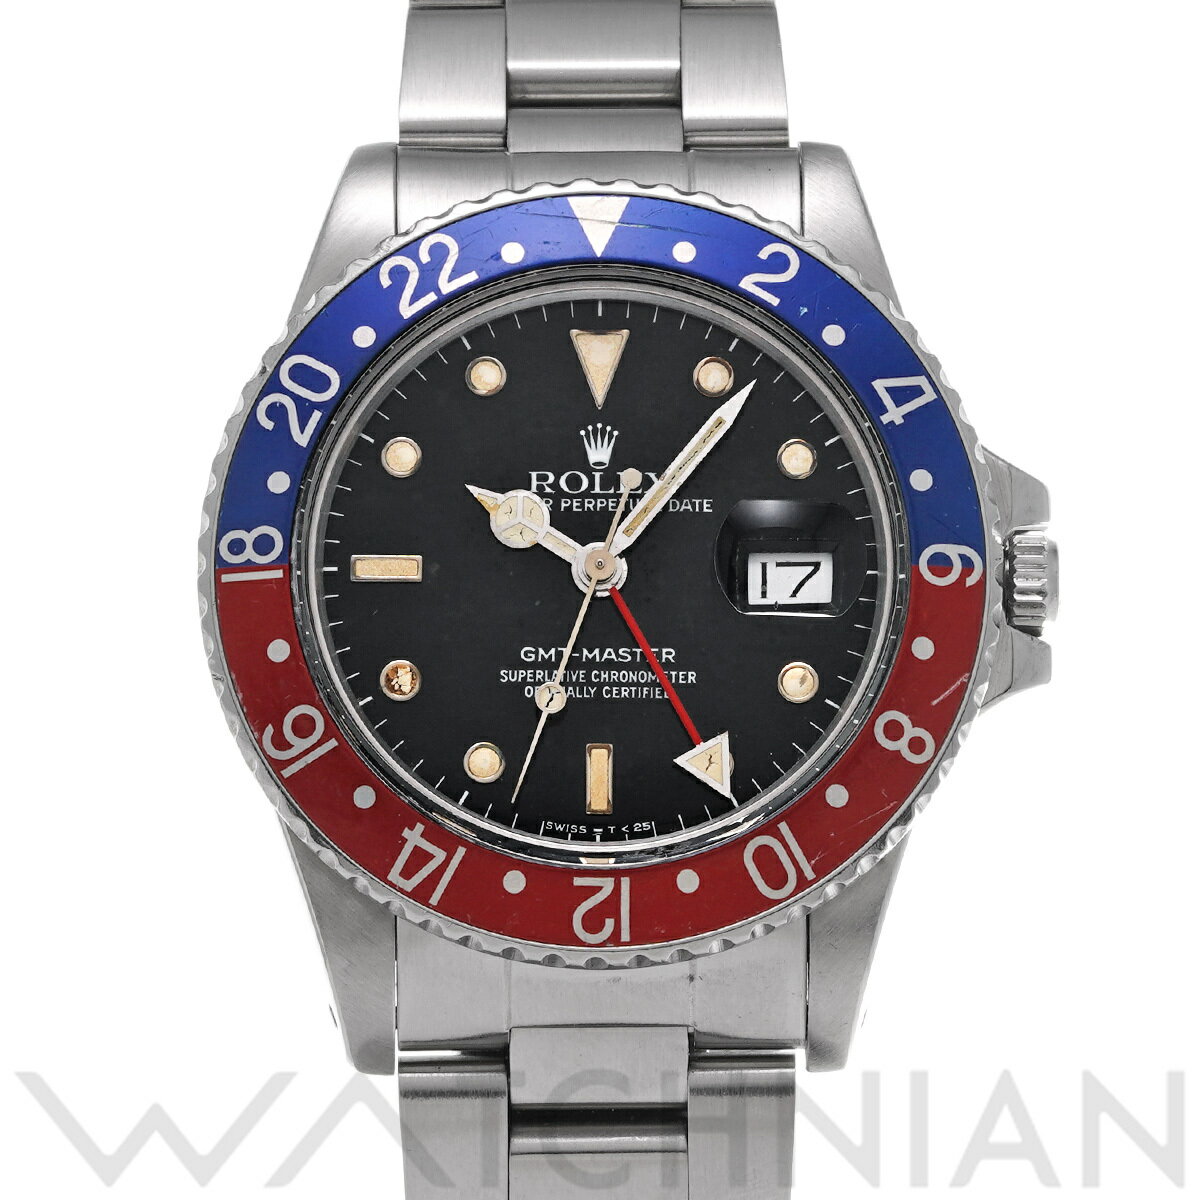 【5種選べるクーポン】【ローン60回払い無金利】【中古】 ロレックス ROLEX GMTマスター 16750 89番台(1985年頃製造) ブラック メンズ 腕時計 ロレックス 時計 高級腕時計 ブランド